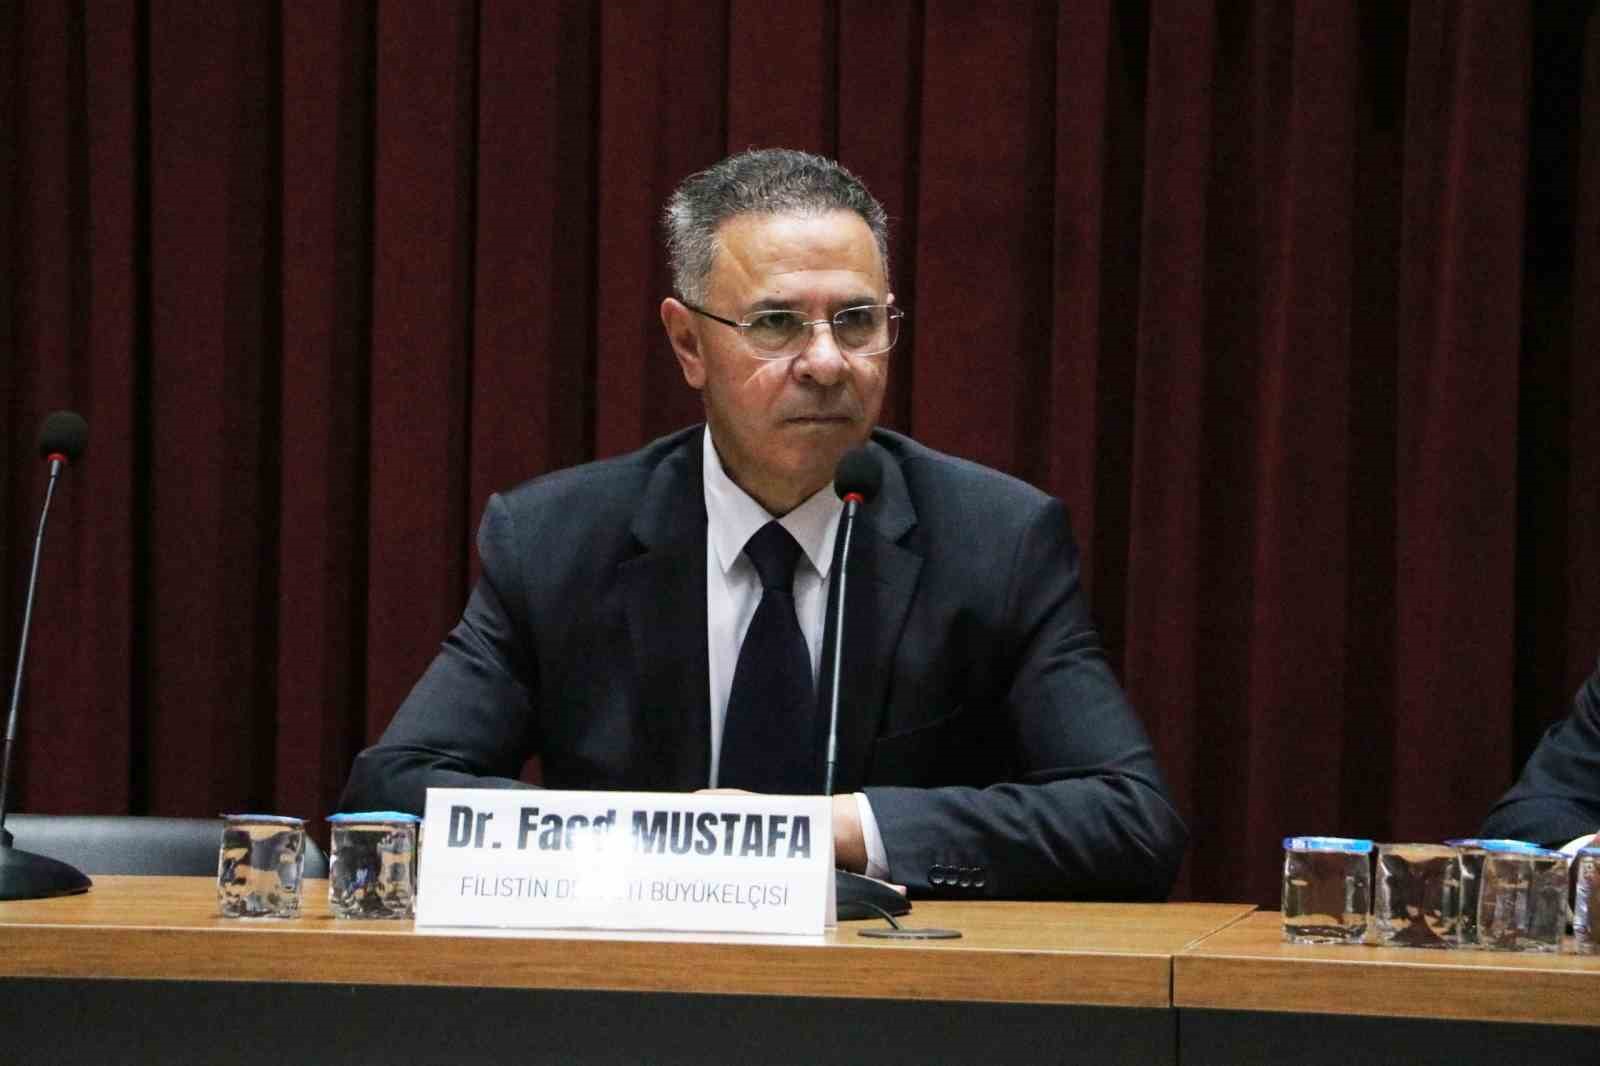 Filistin Ankara Büyükelçisi Faed Mustafa: 36 Bin Kişi Kaybımız Var; Kaybolanların Sayısı 10 Binden Fazla, 80 Bin Yaralımız Var